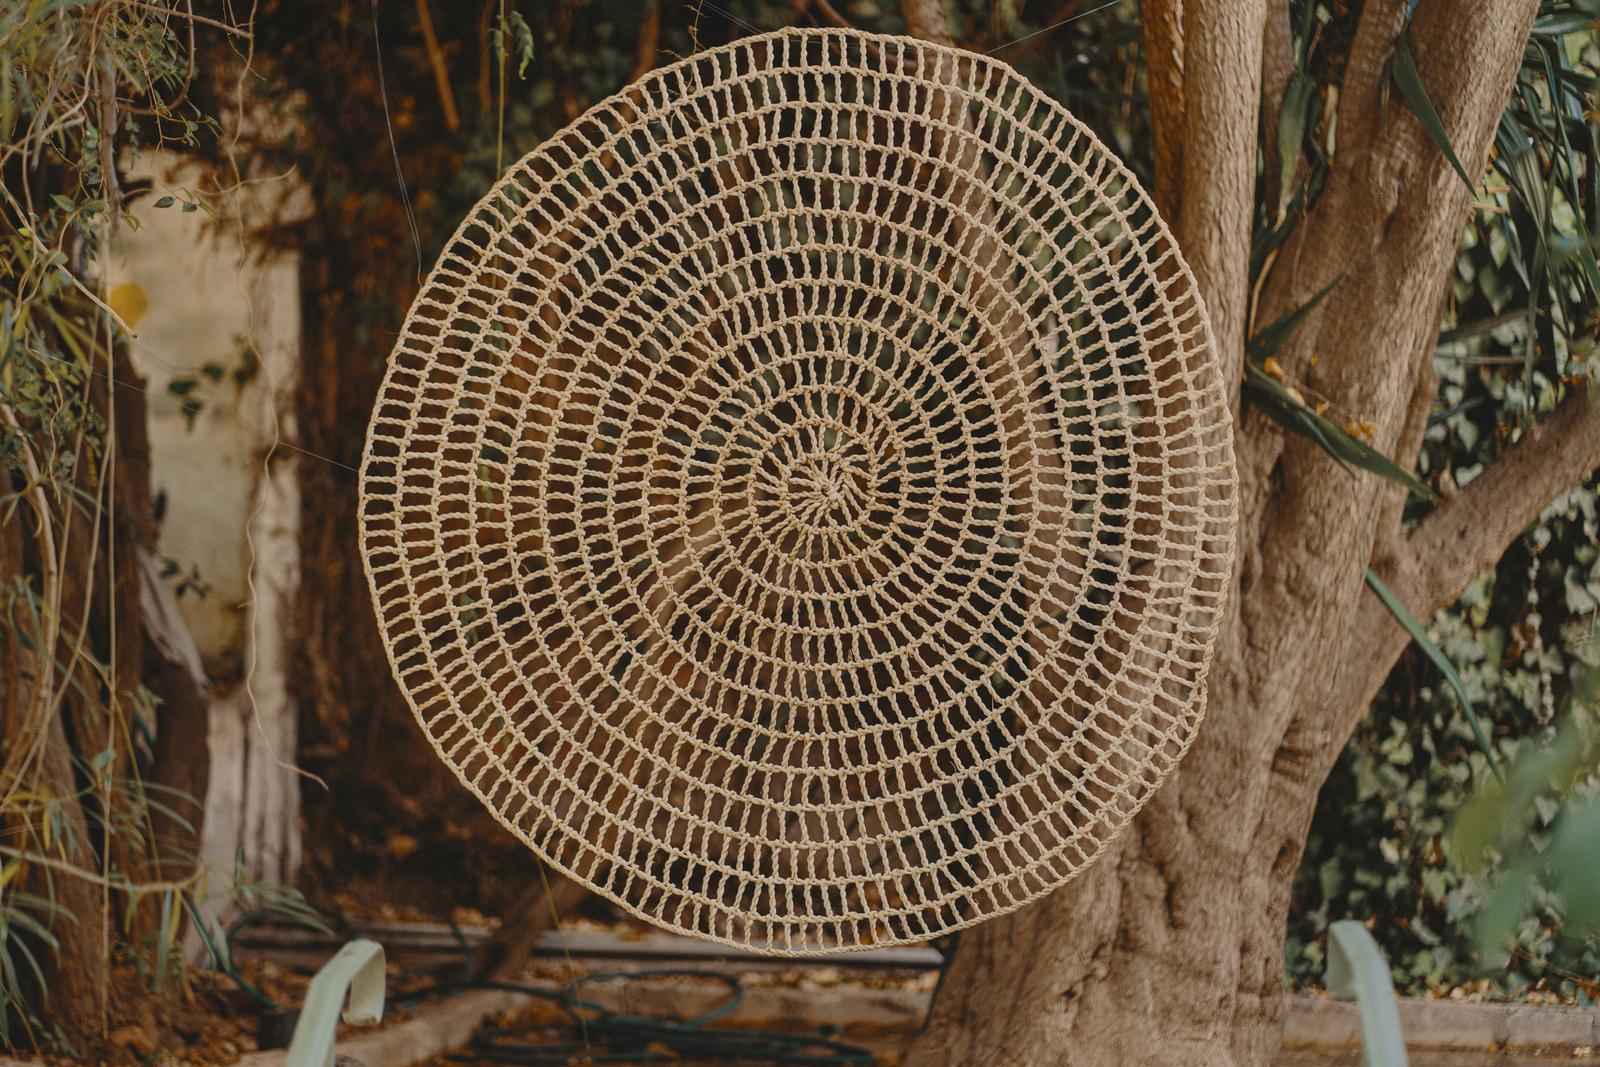 Le tapis de décoration murale CHABKA est un tapis en toile d'araignée écologique fabriqué à partir de fibres de palmier naturelles. 

Le tapis CHABKA offre une combinaison unique de style et de durabilité. La forme en toile d'araignée ajoute une